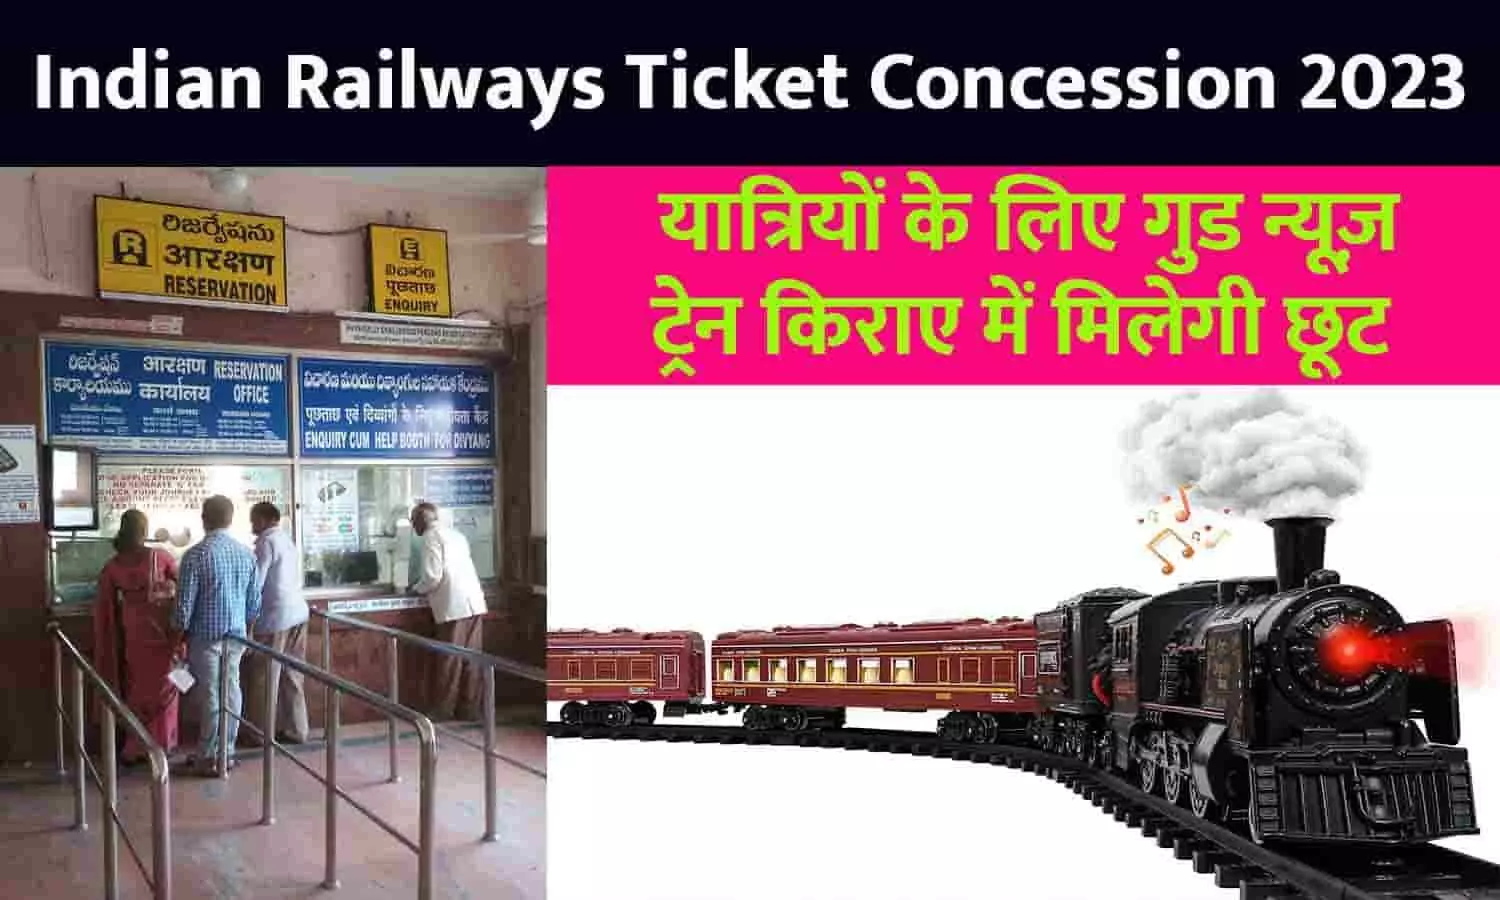 Indian Railways Ticket Concession Big Alert 2023: यात्रियों के लिए गुड न्यूज़, ट्रेन किराए में मिलेगी छूट, अब फ्री मिलेंगी ये सुविधाएं